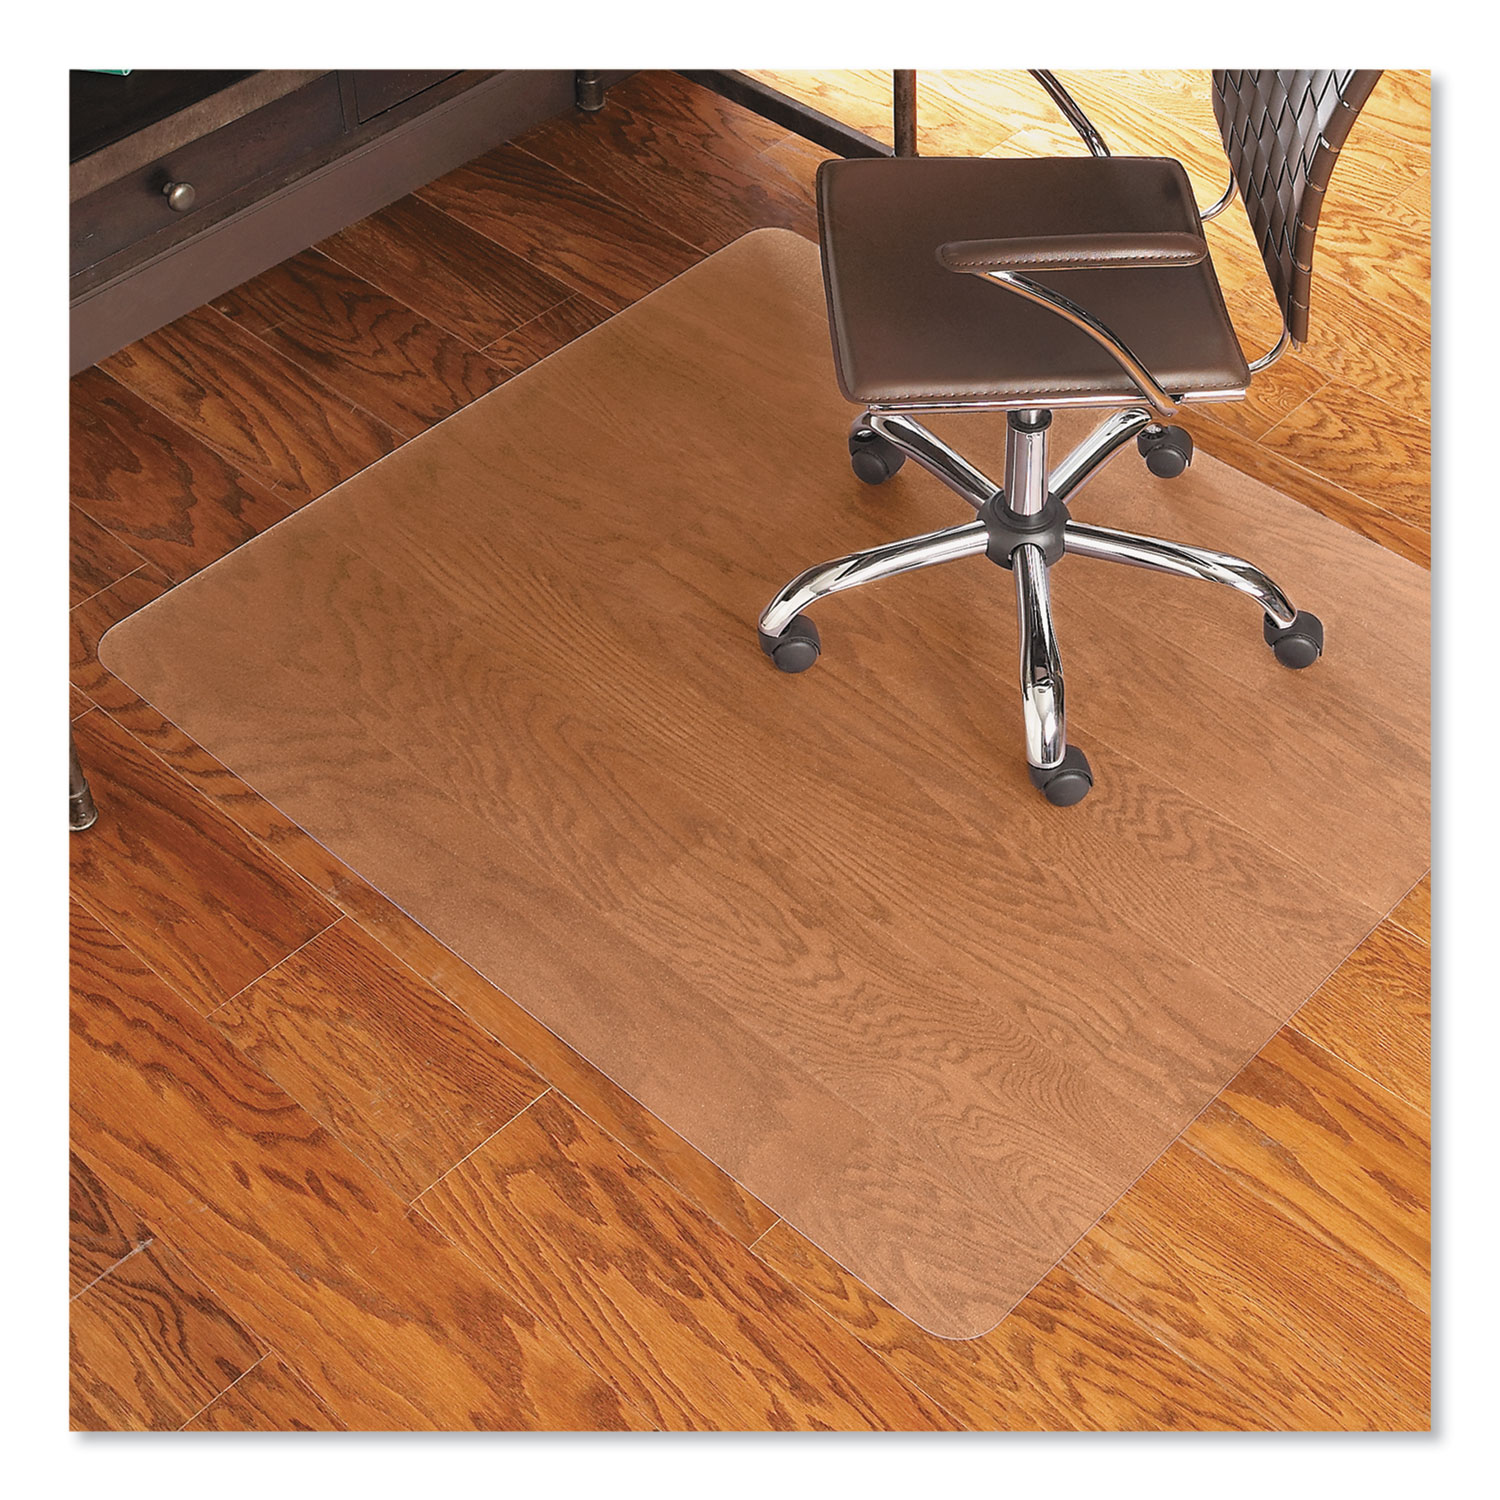  ES Robbins 131826 Economy Series Chair Mat for Hard Floors, 46 x 60, Clear (ESR131826) 